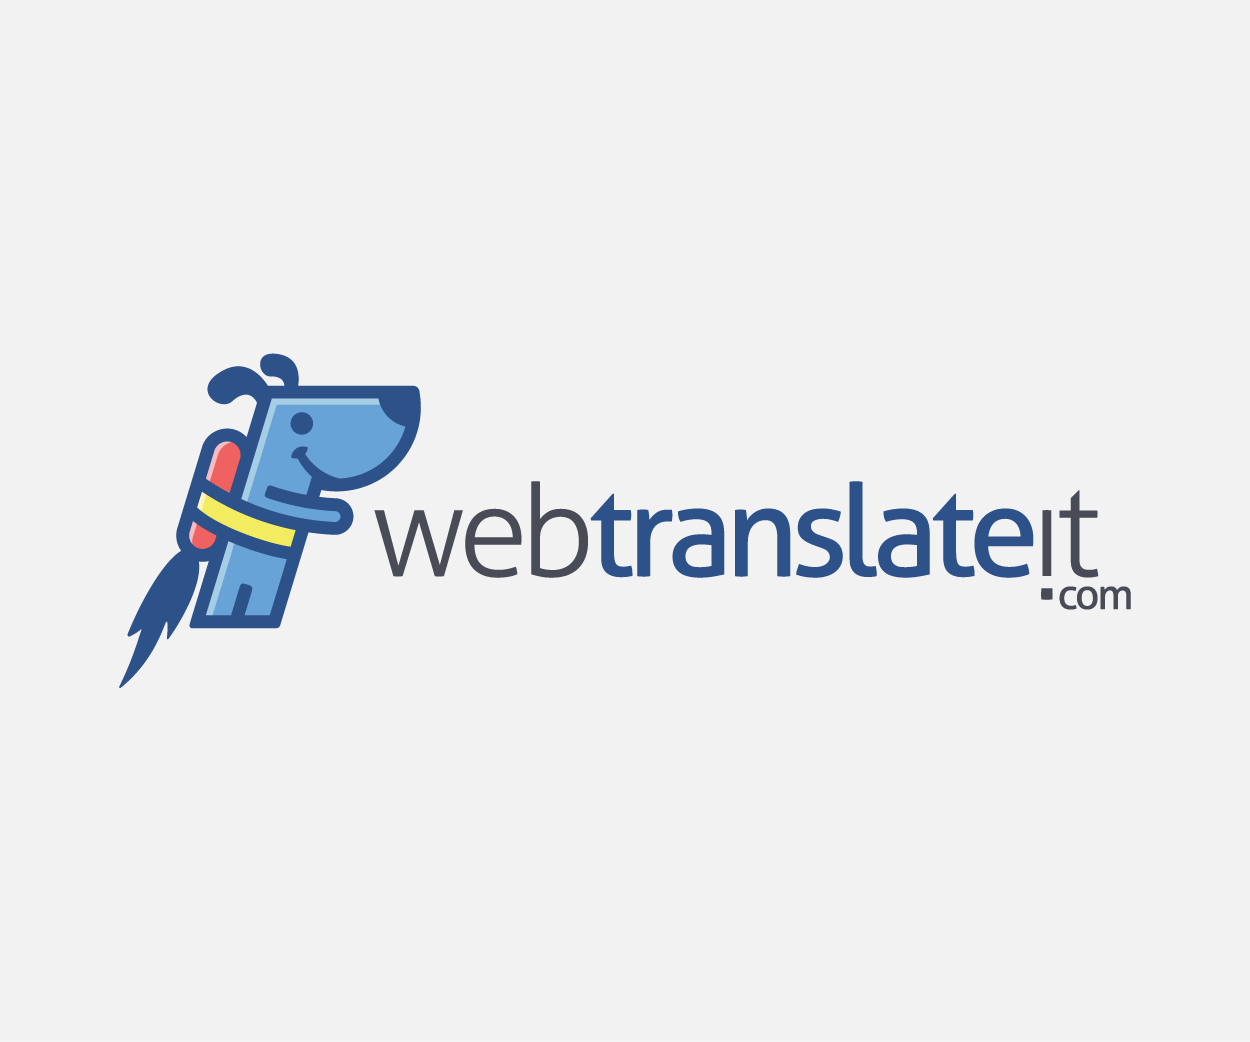 WebTranslateIt all-in-one translation management system Logo Design Image